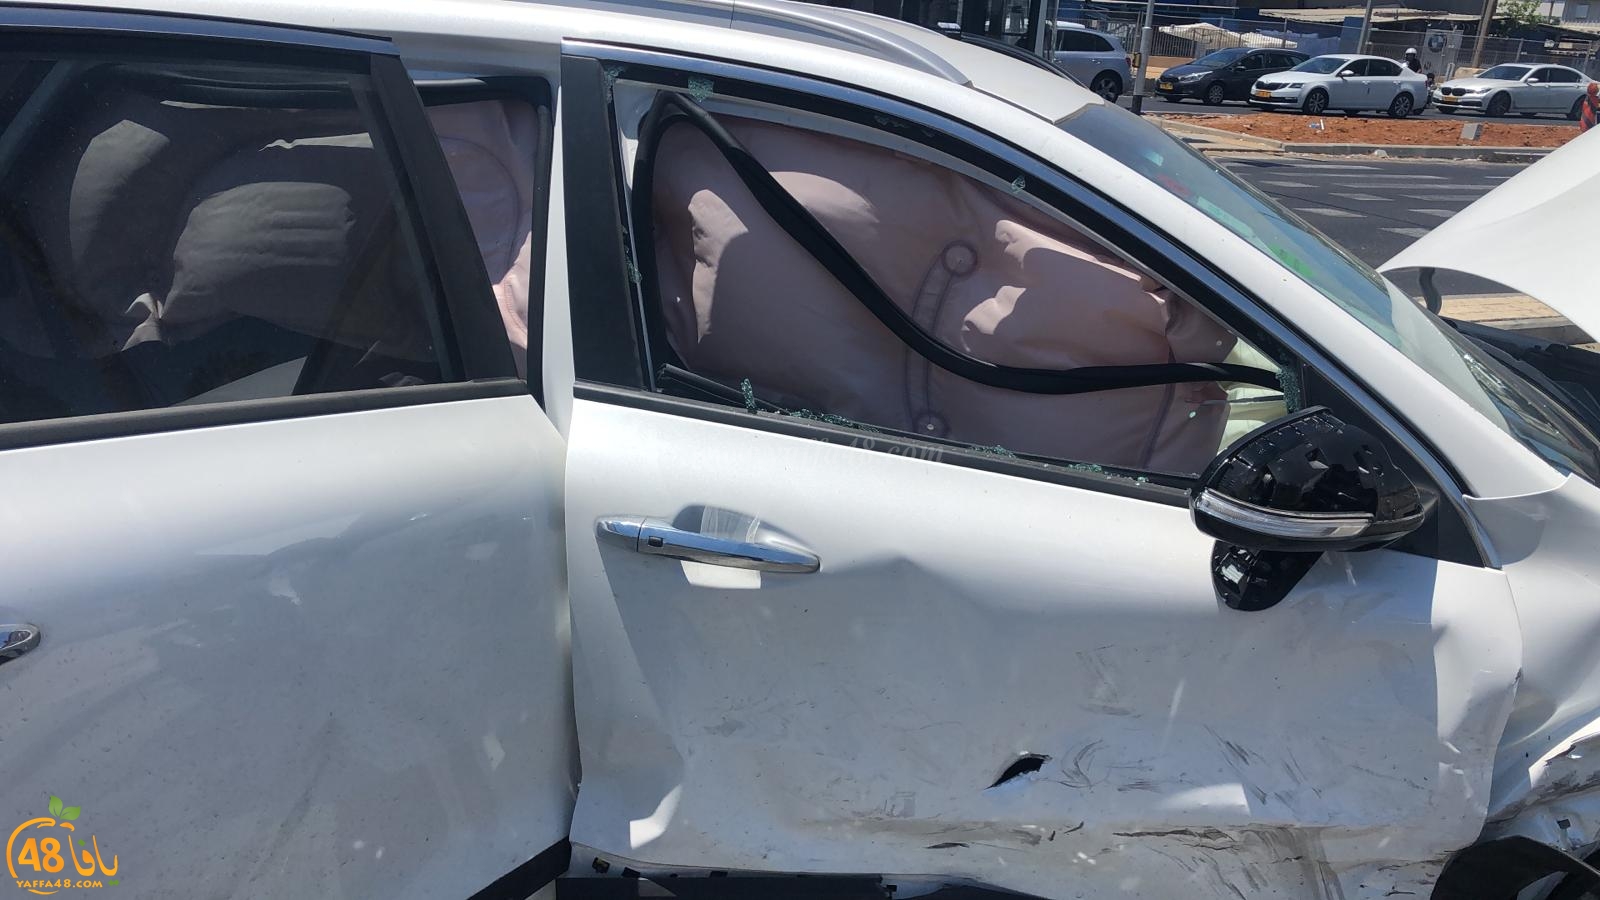  فيديو: 5 اصابات متفاوتة بحادث طرق بين مركبتين في يافا 